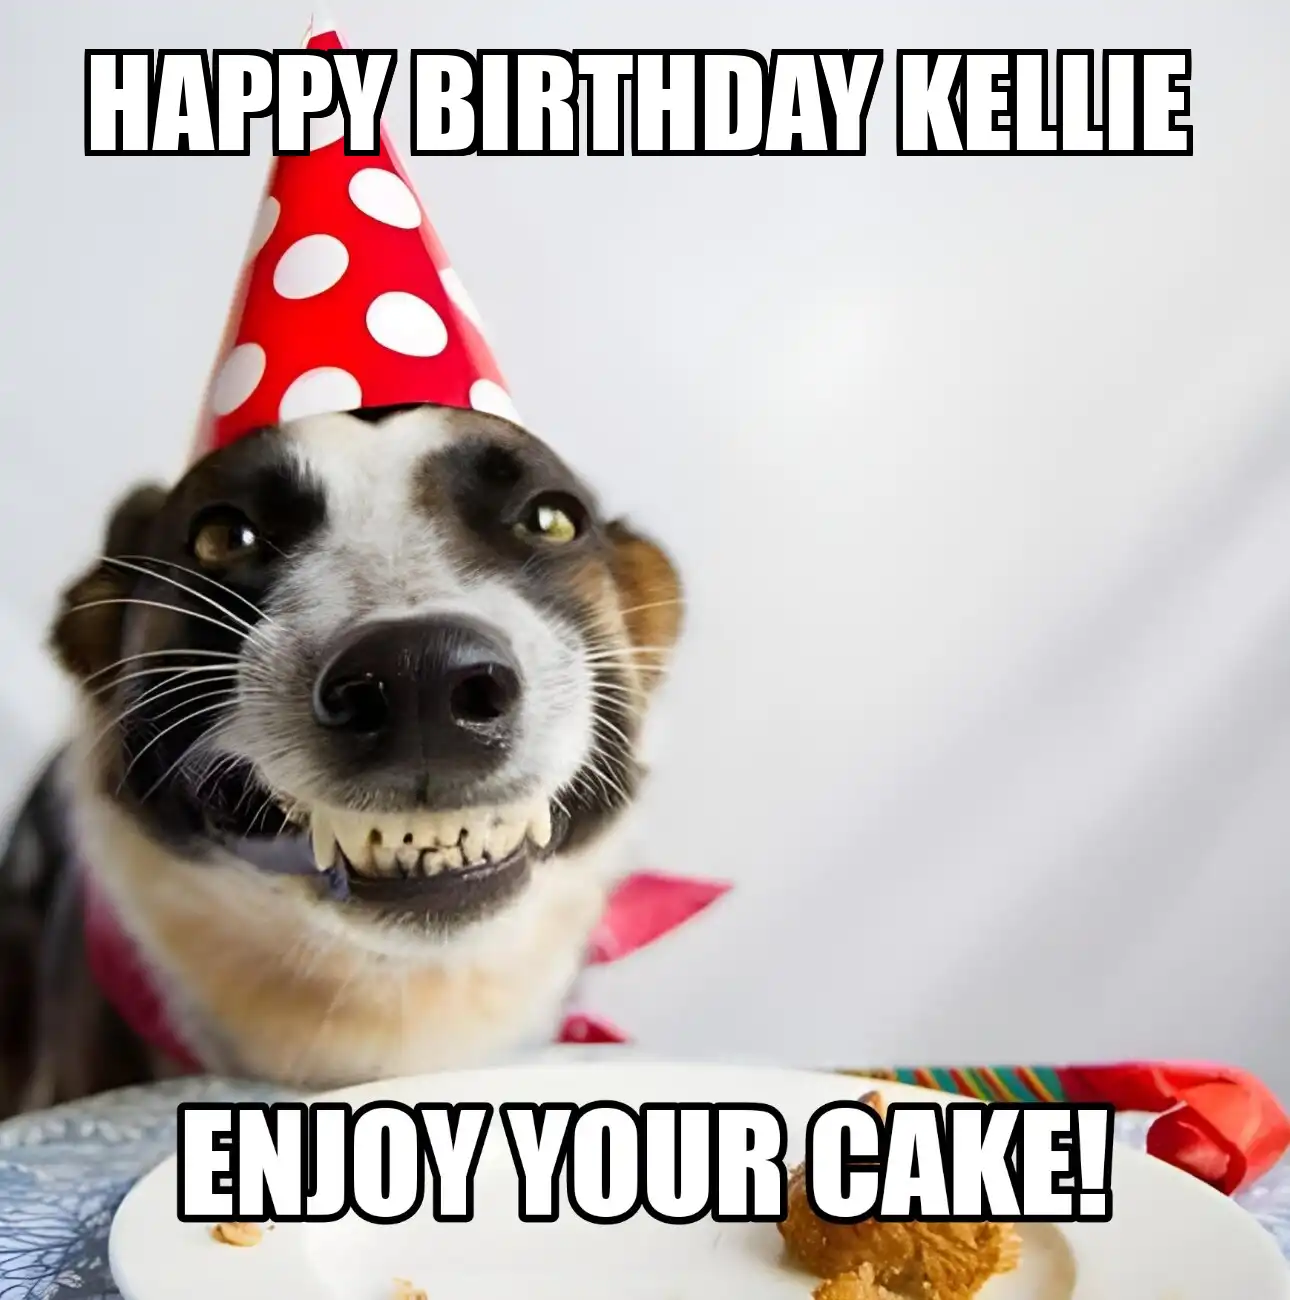 Happy Birthday Kellie Enjoy Your Cake Dog Meme